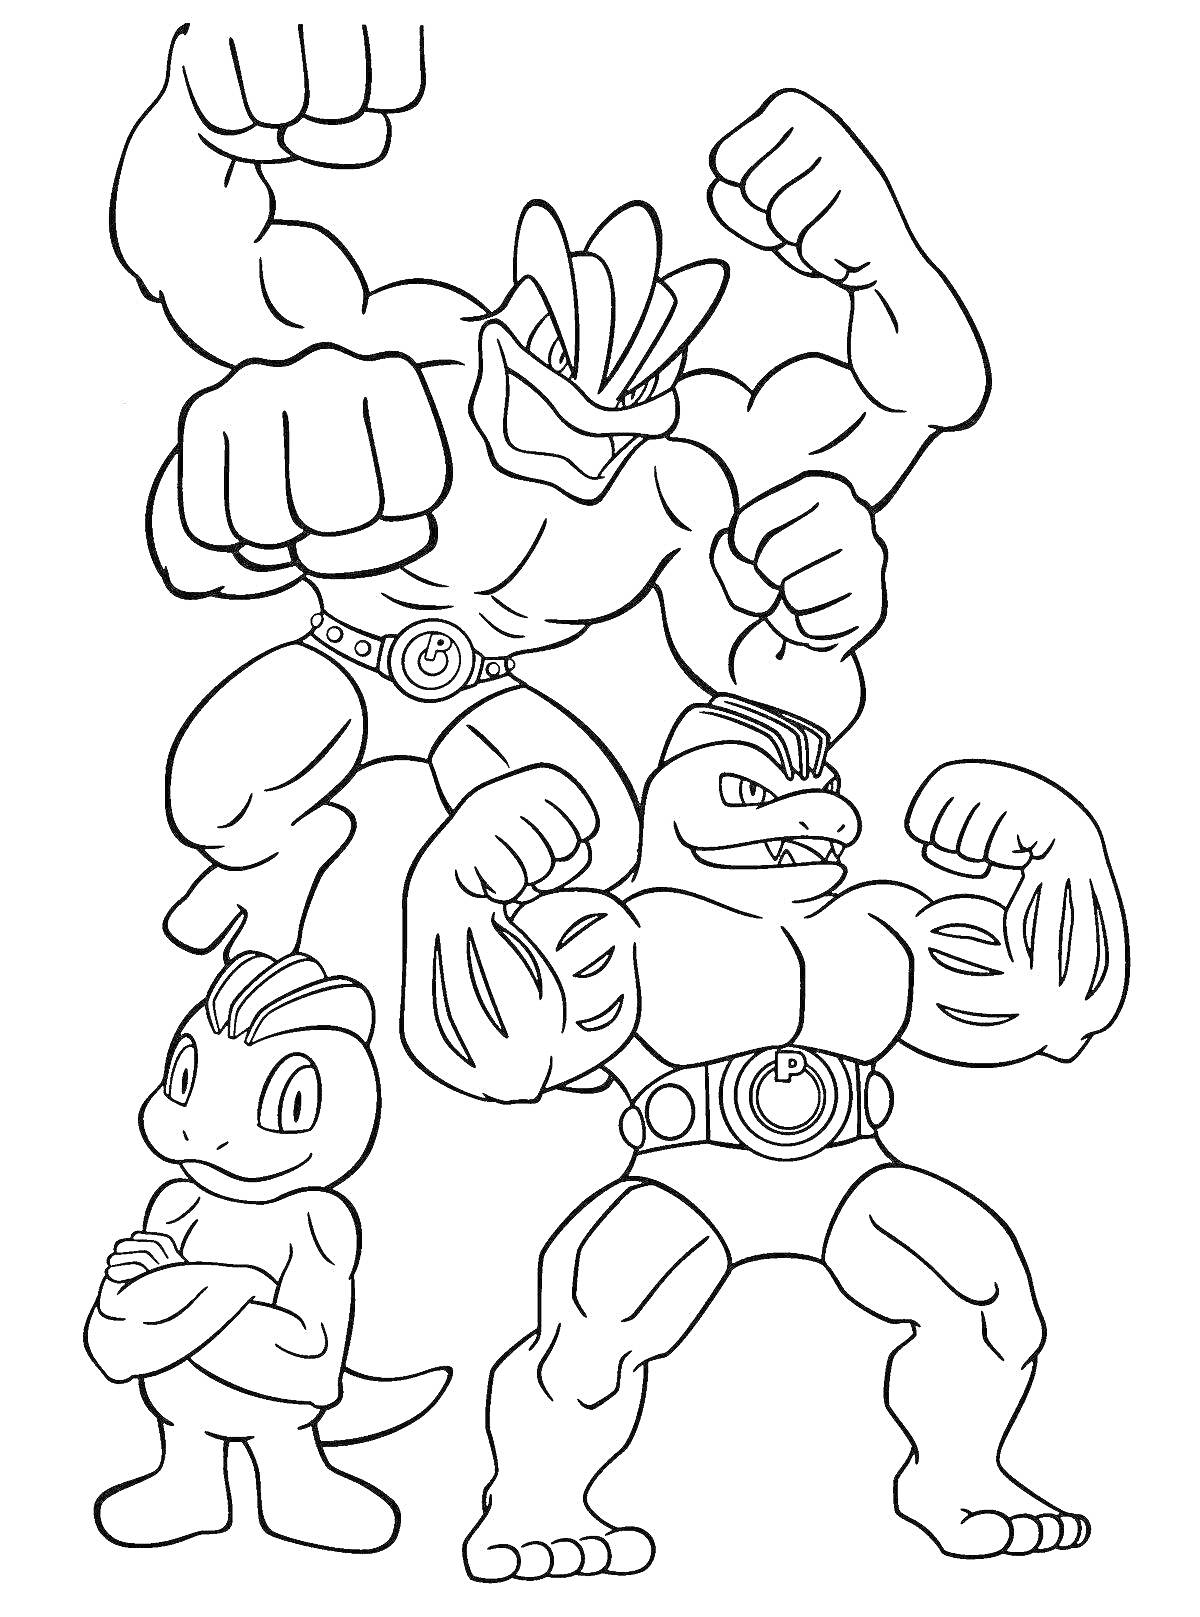 Три персонажа Гуджитсу с мускулистыми телами и боевыми позами